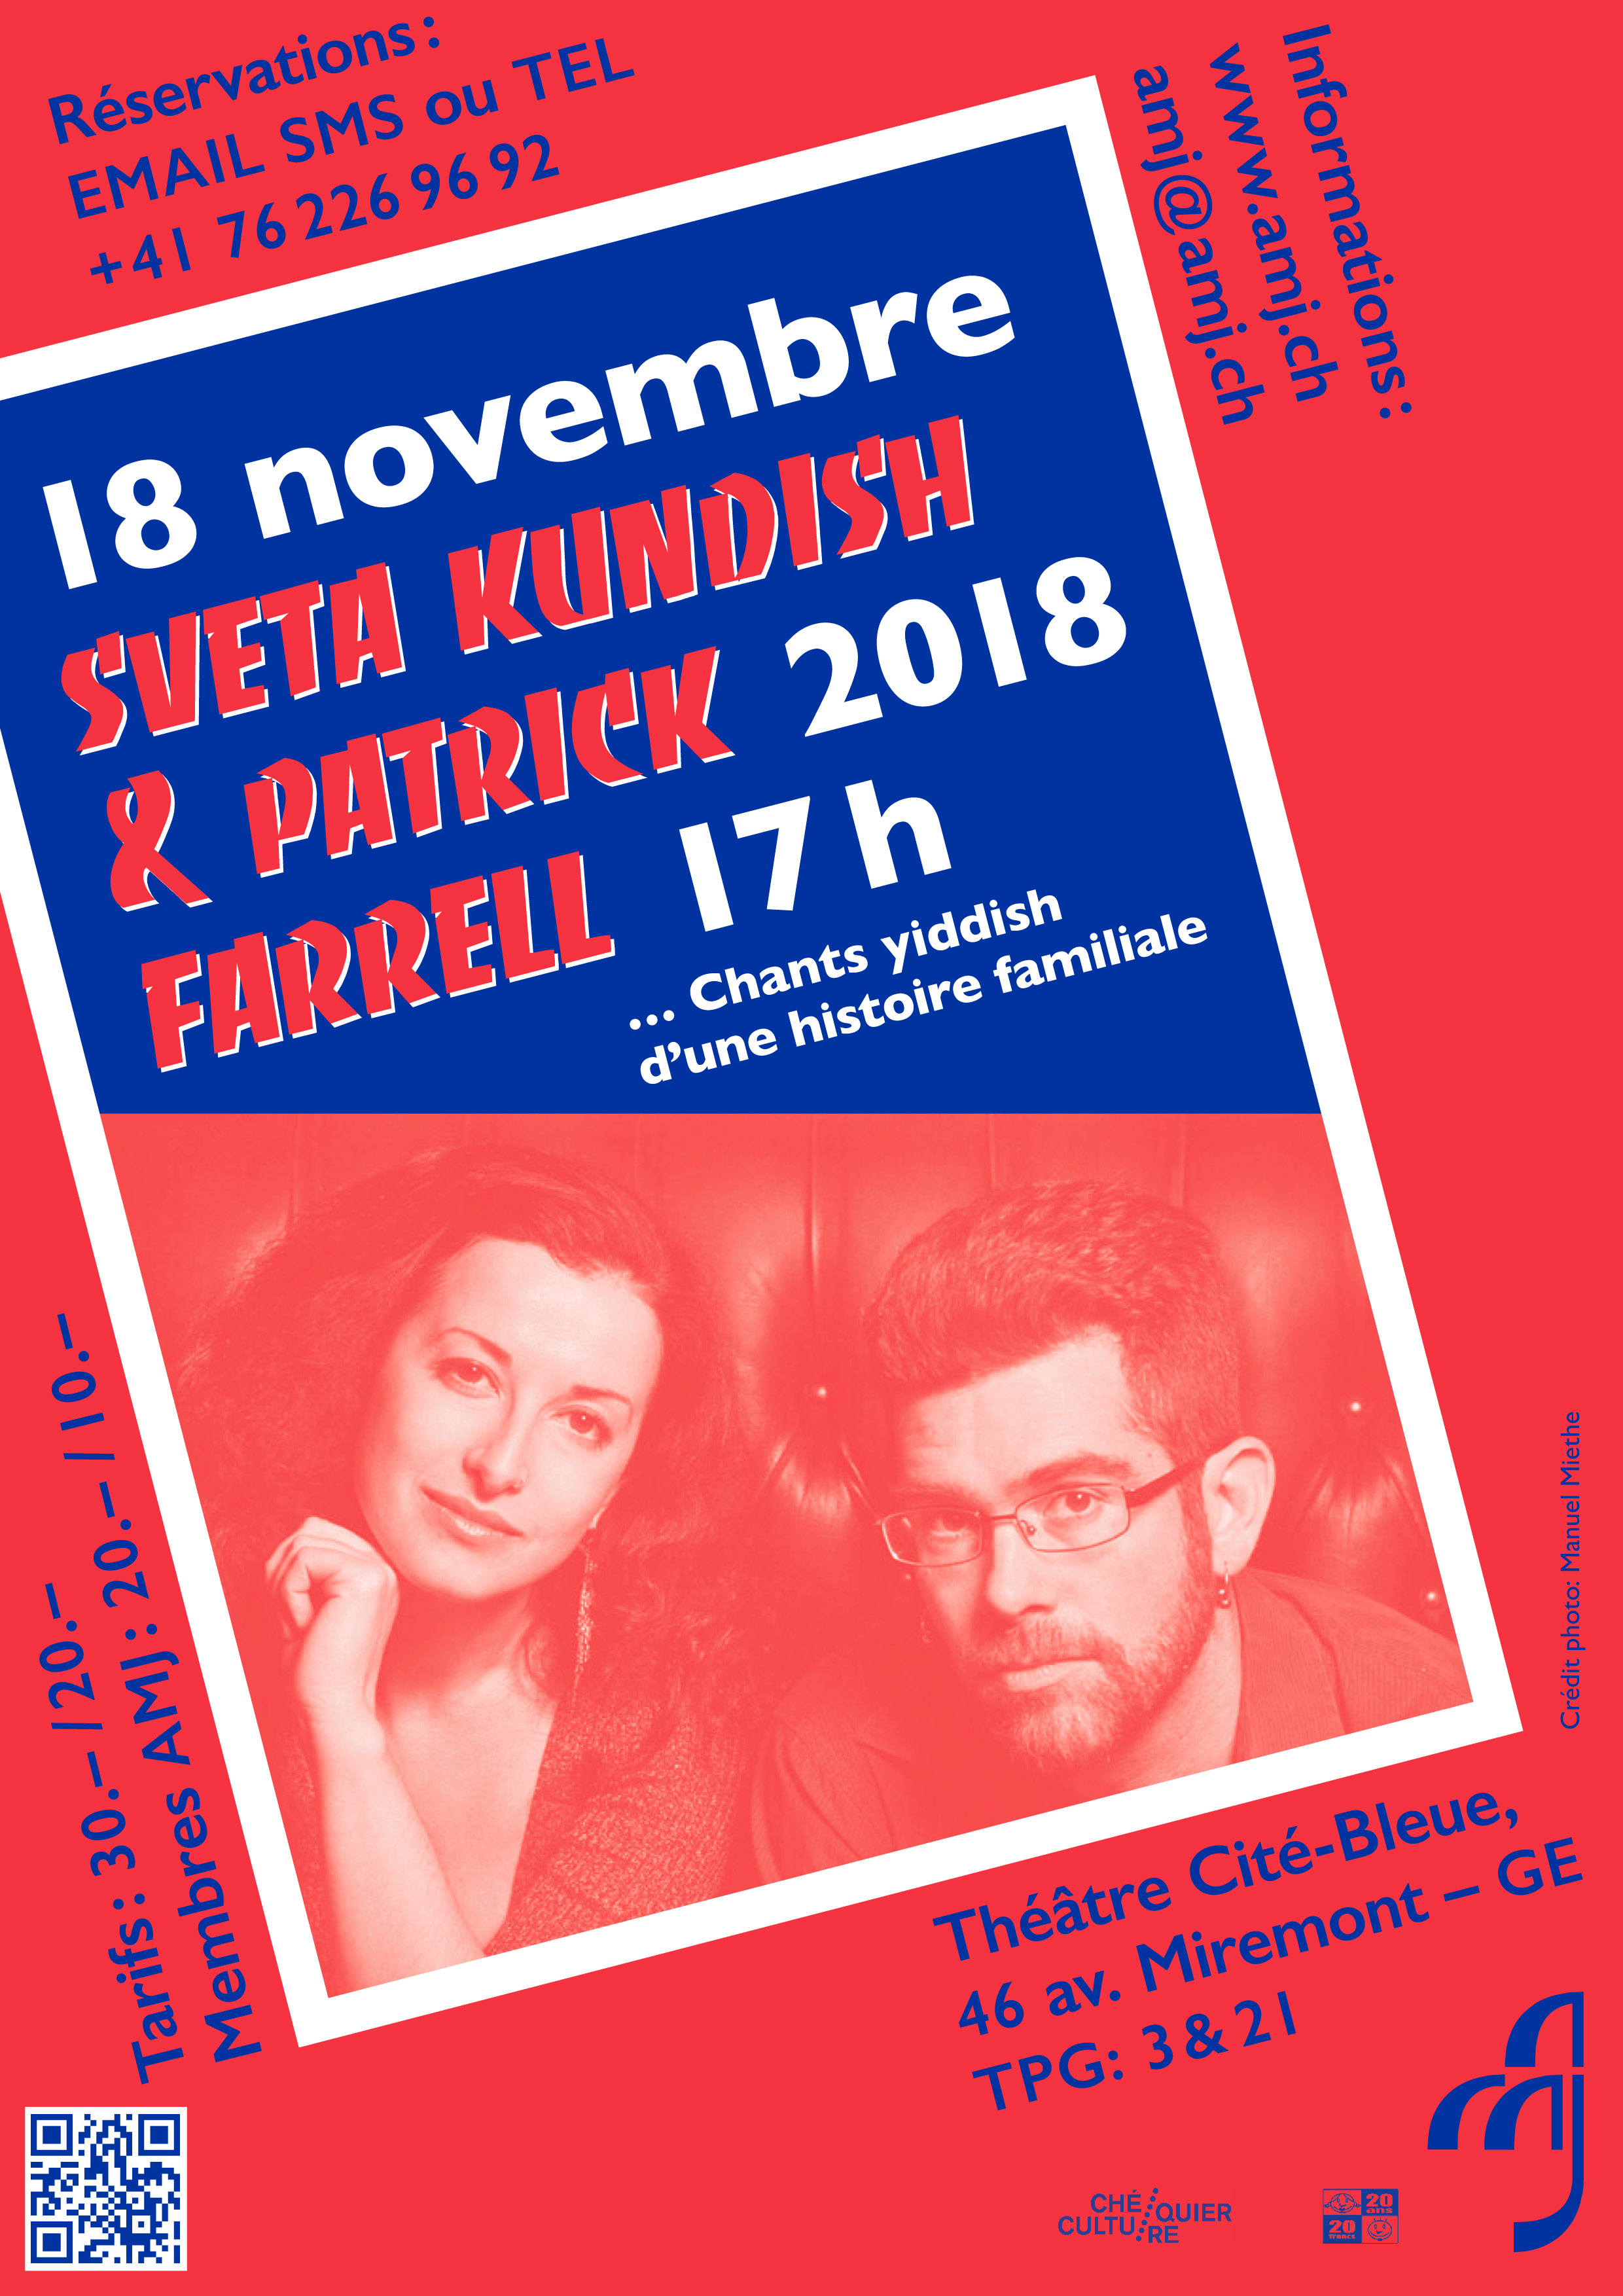 Sveta Kundish & Patrick Farrell - Genève - 18.11.2018